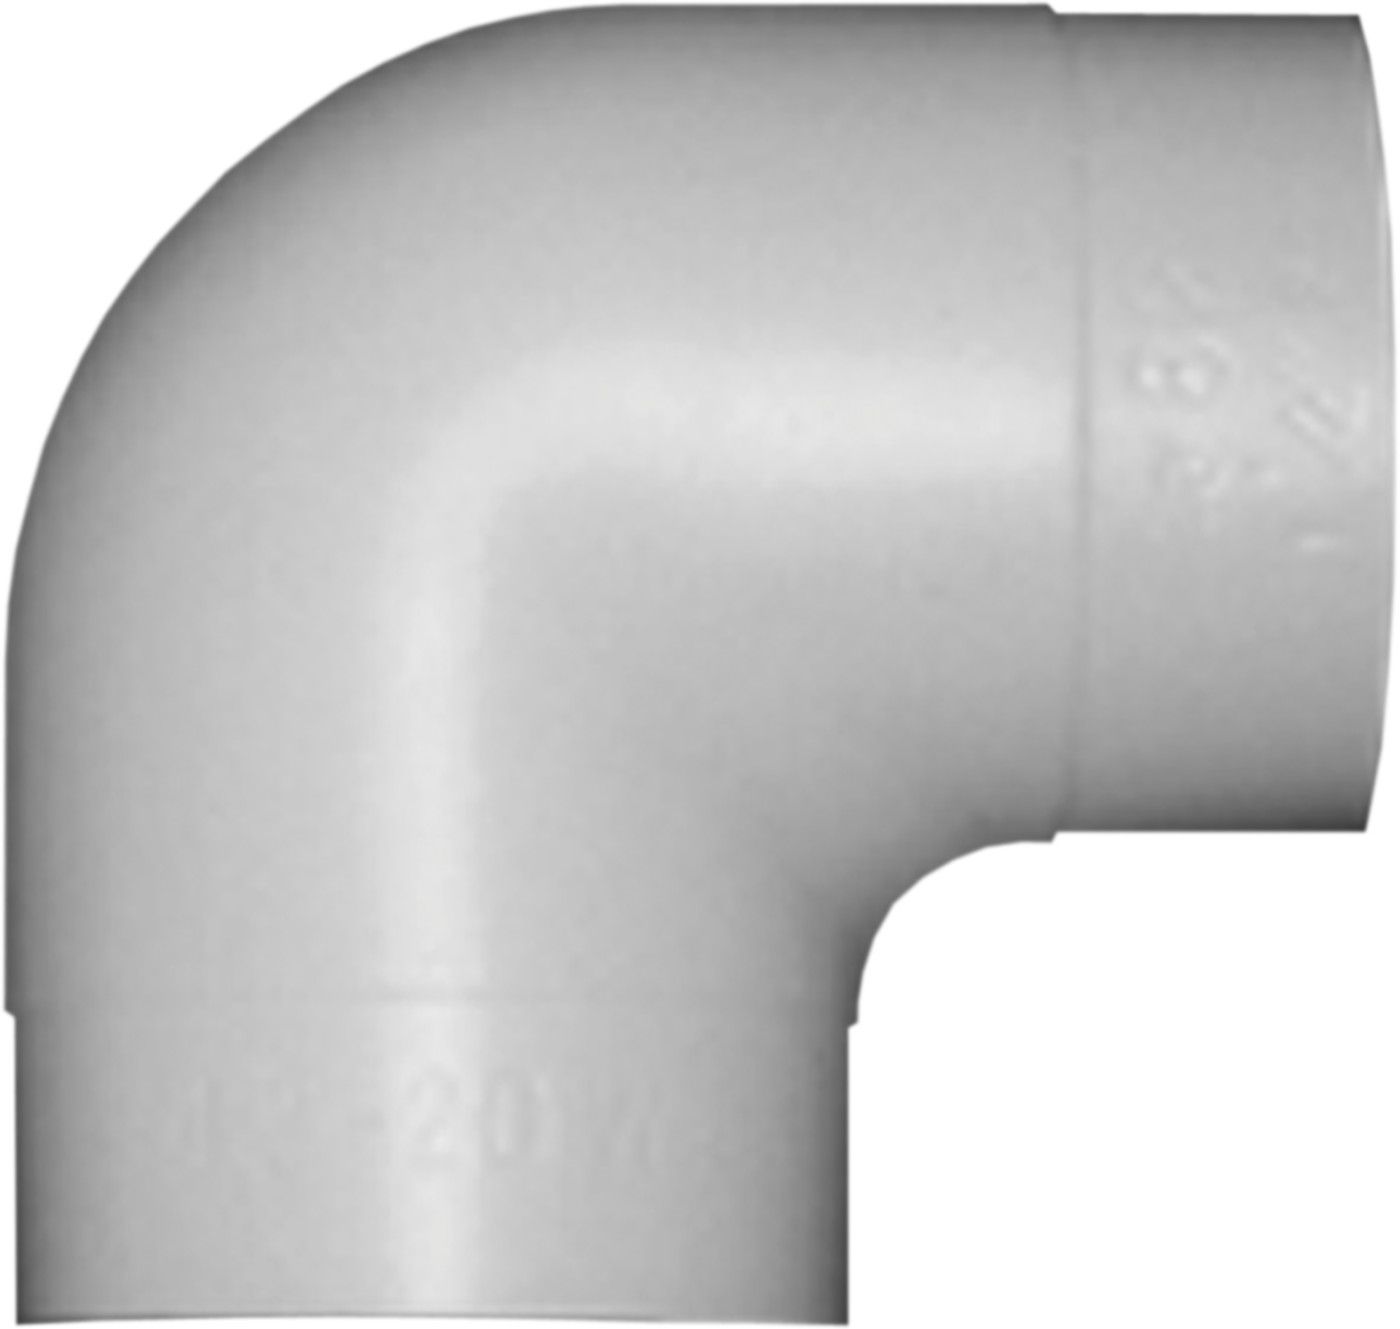 PVC-Bogen 90° W 20 mm d 89 mm - PVC-Folie